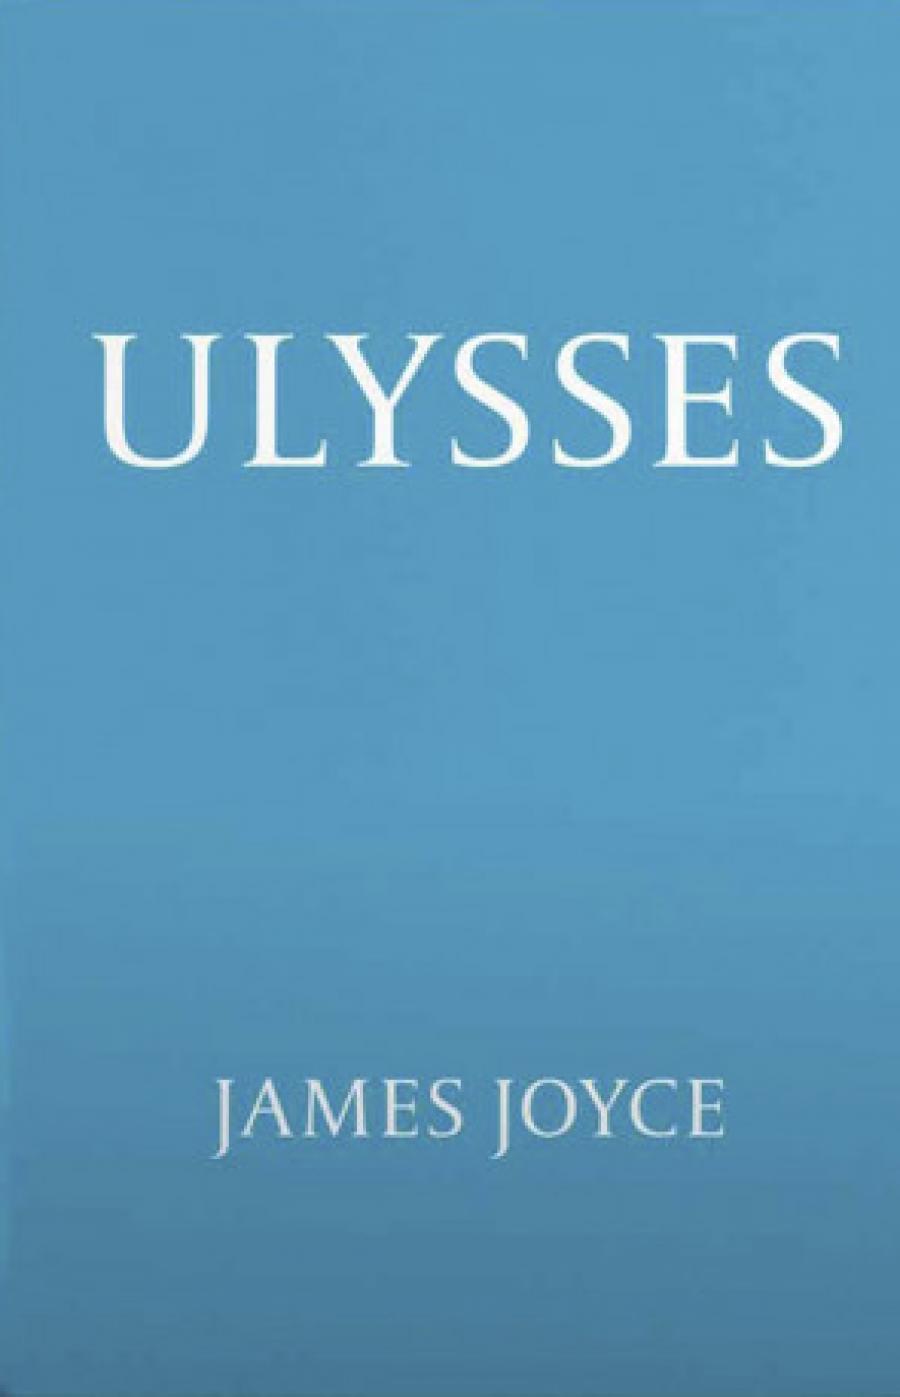 Forsiden af bogen Ulysses